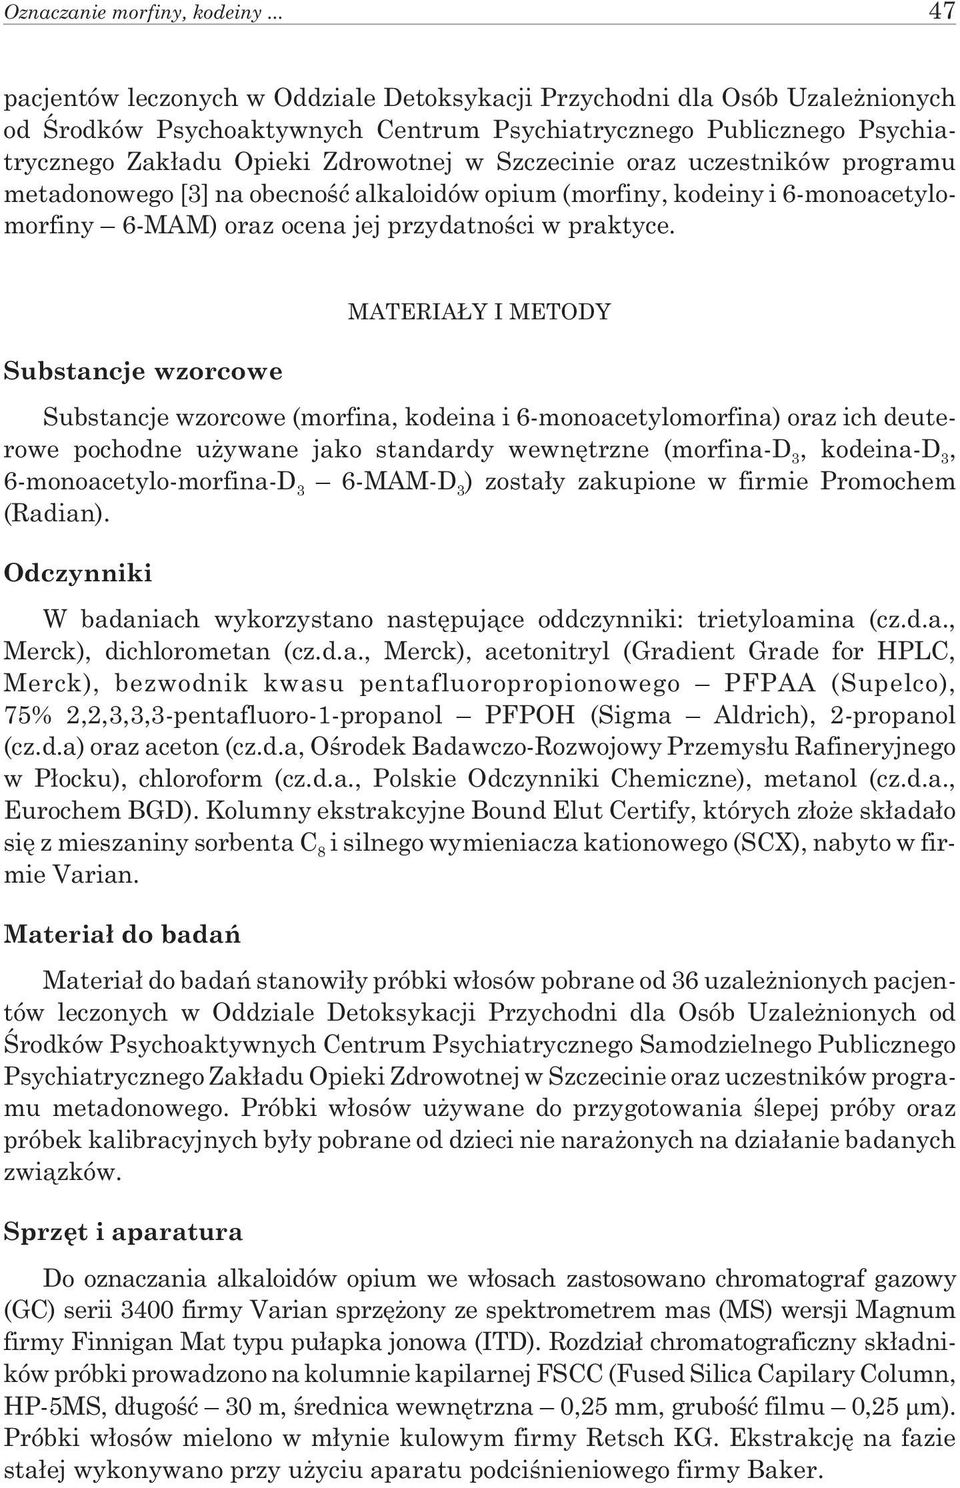 Szczecinie oraz uczestników programu metadonowego [3] na obecnoœæ alkaloidów opium (morfiny, kodeiny i 6-monoacetylomorfiny 6-MAM) oraz ocena jej przydatnoœci w praktyce.